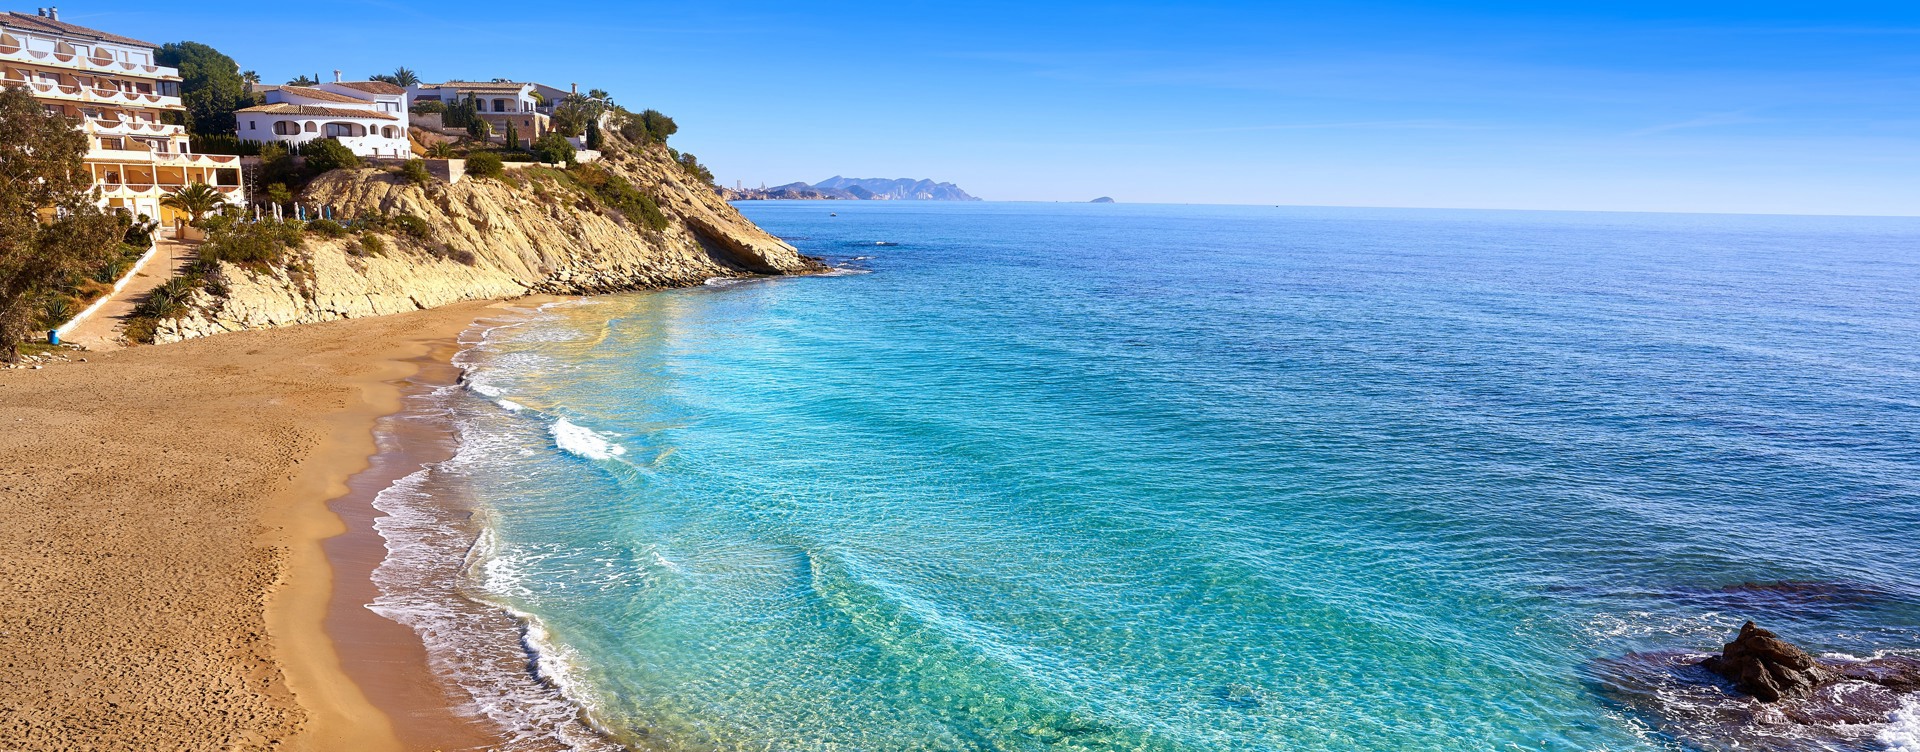 Geniet van zon, zee en strand
aan de Spaanse kust in El Campello